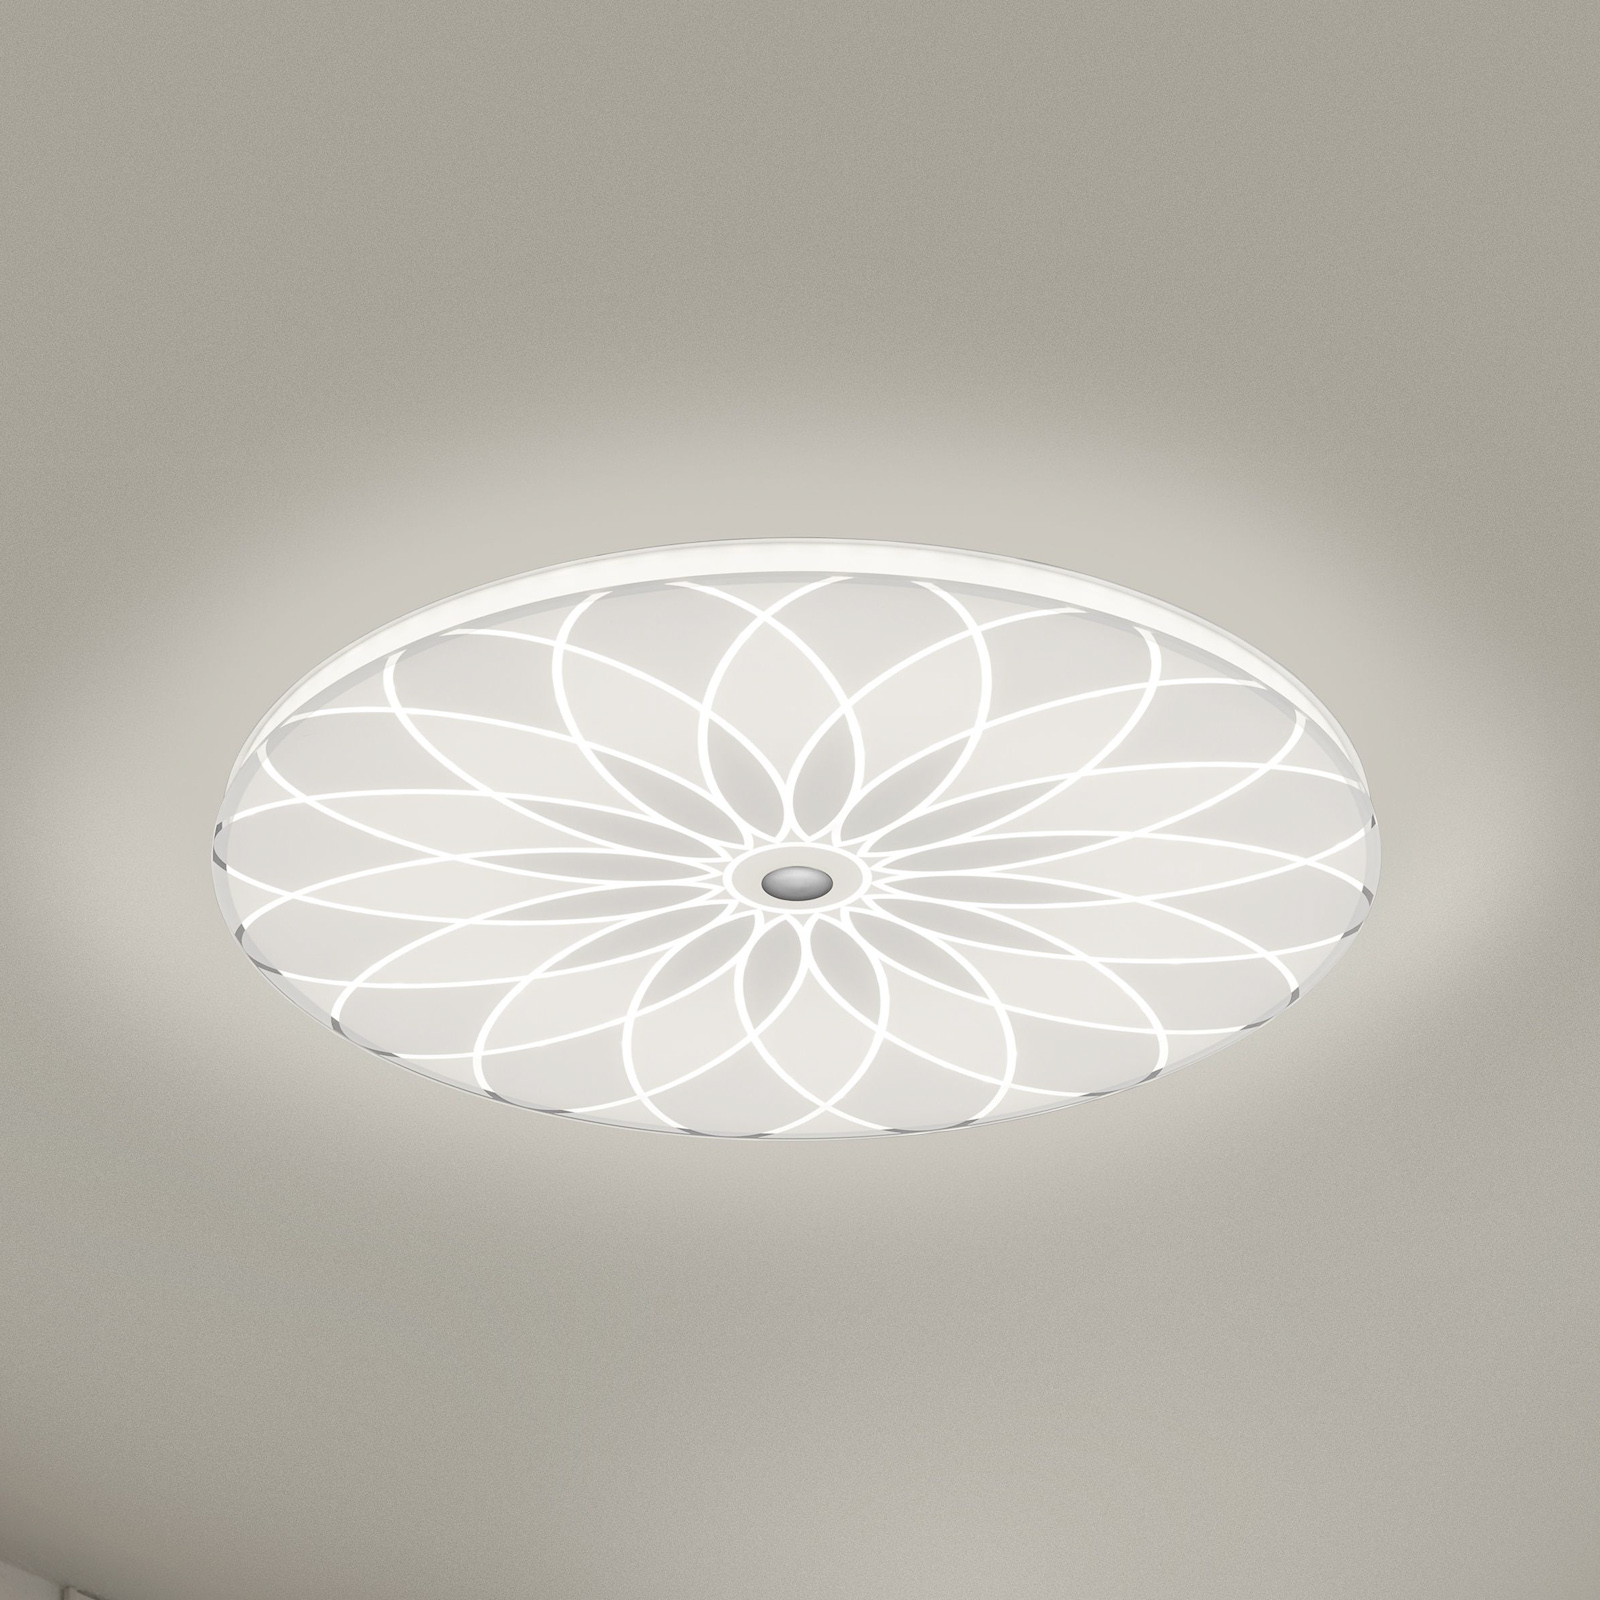 BANKAMP Mandala LED lámpa virág, Ø 42 cm